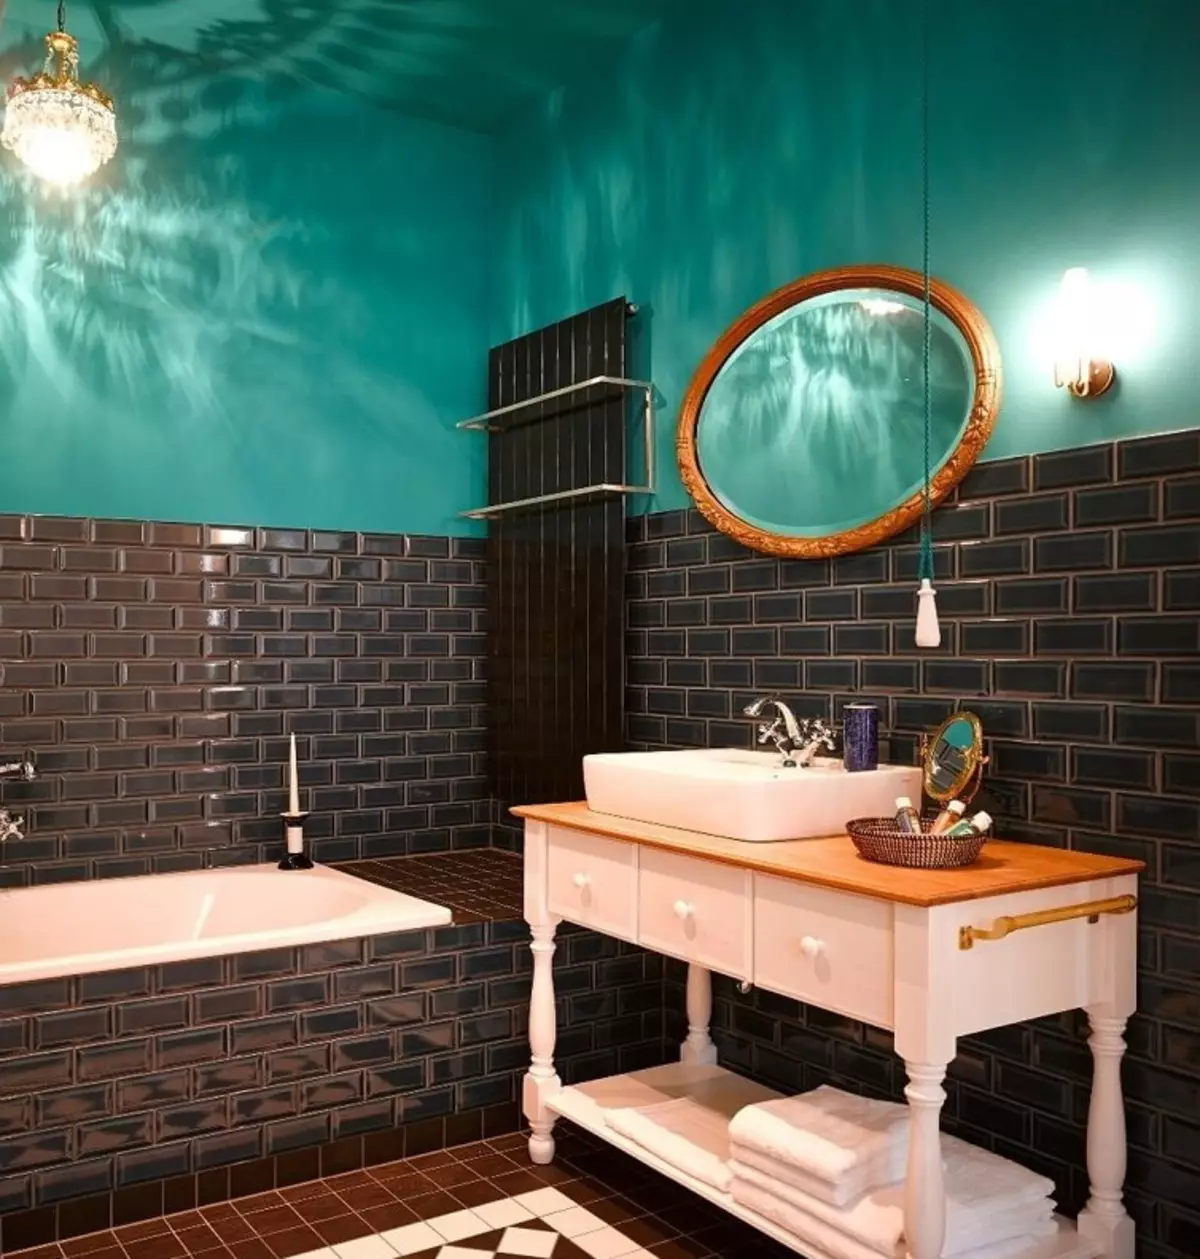 ห้องน้ำสีเขียวขุ่น (61 รูป): ตัวอย่างของการออกแบบห้องน้ำในสีนี้ เราเข้าใจในสีสร้างการตกแต่งภายในที่สวยงาม 10203_36